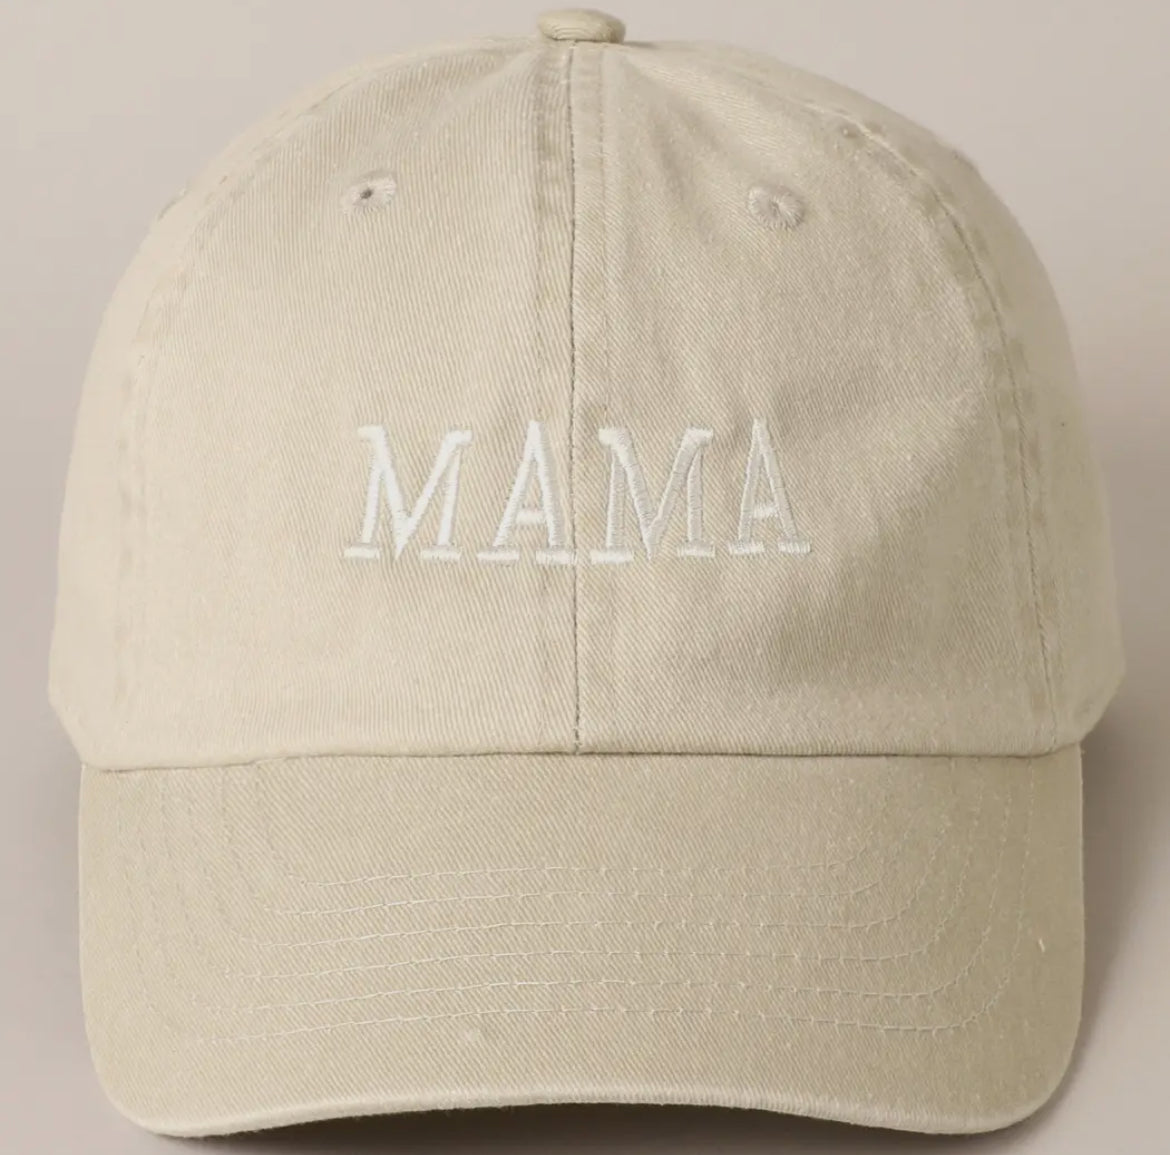 Mama Baseball Cap- TAN (PRE-ORDER)